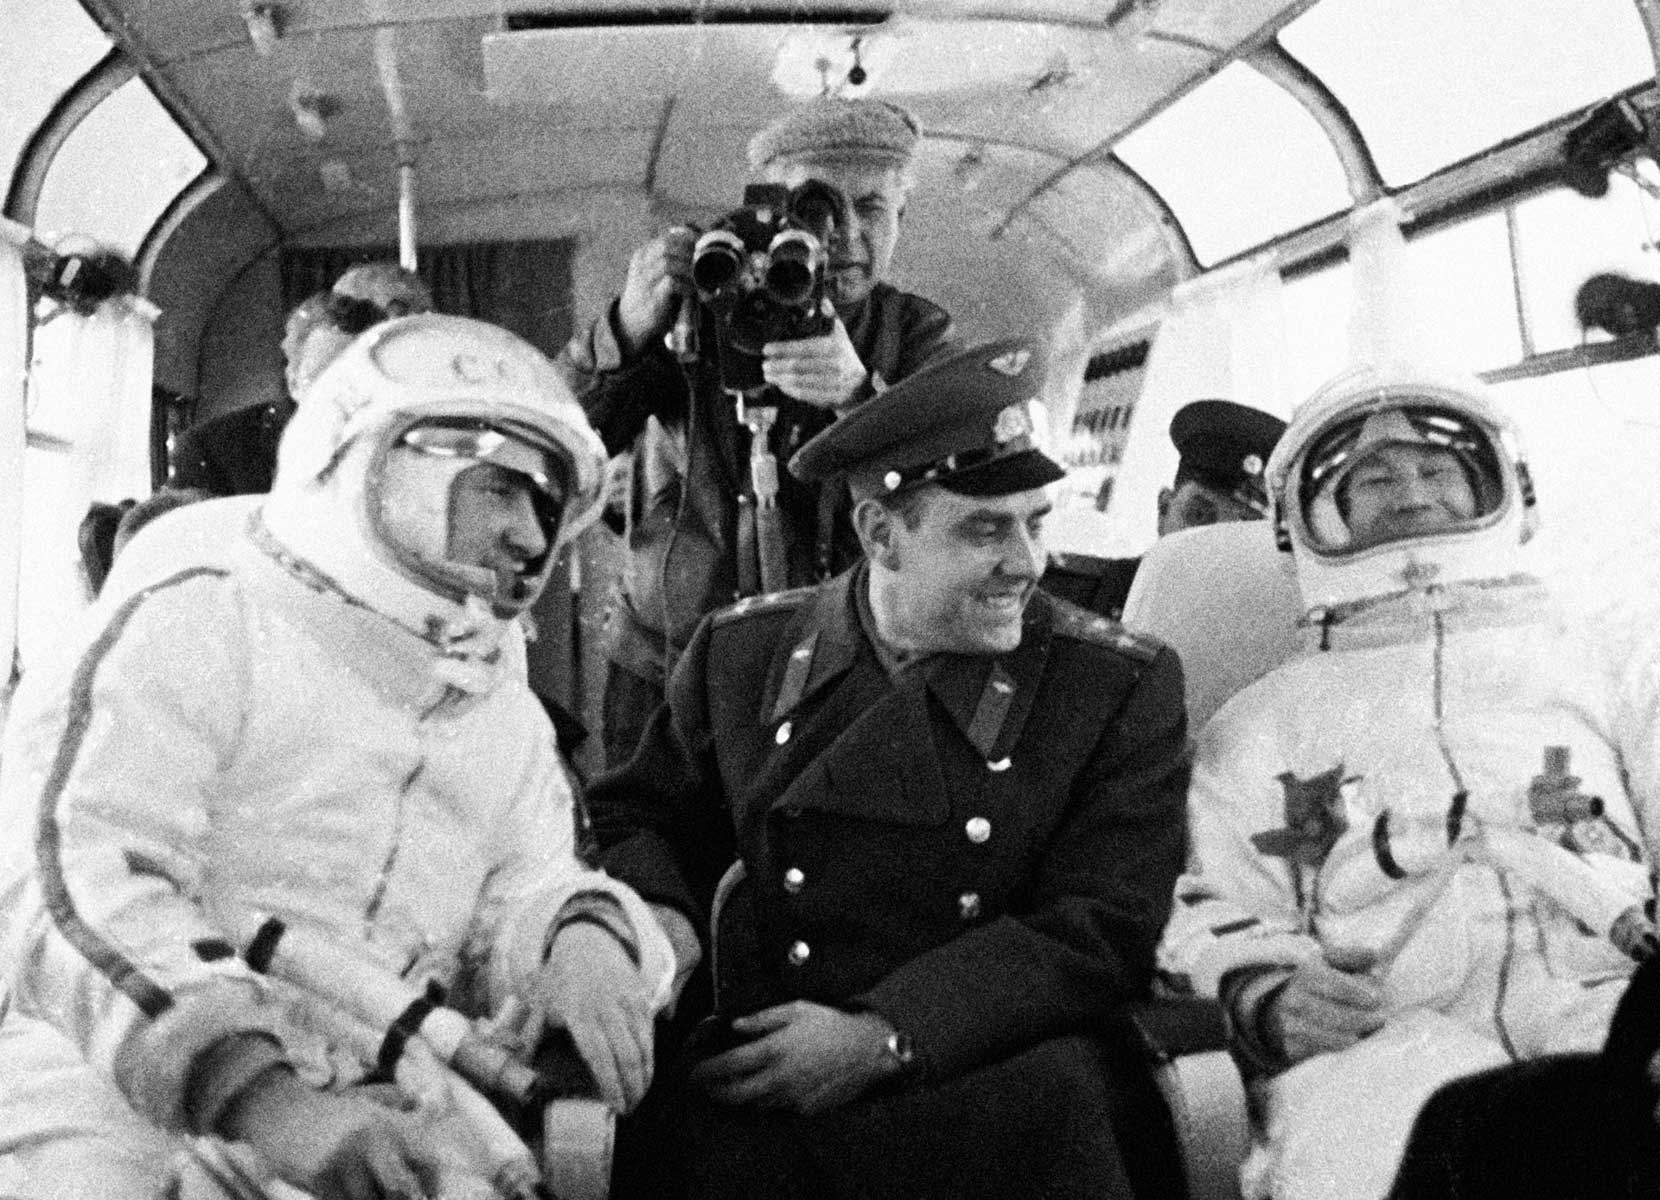 Выход в космос восход 2. Восход 2 космонавты Леонов и Беляев.